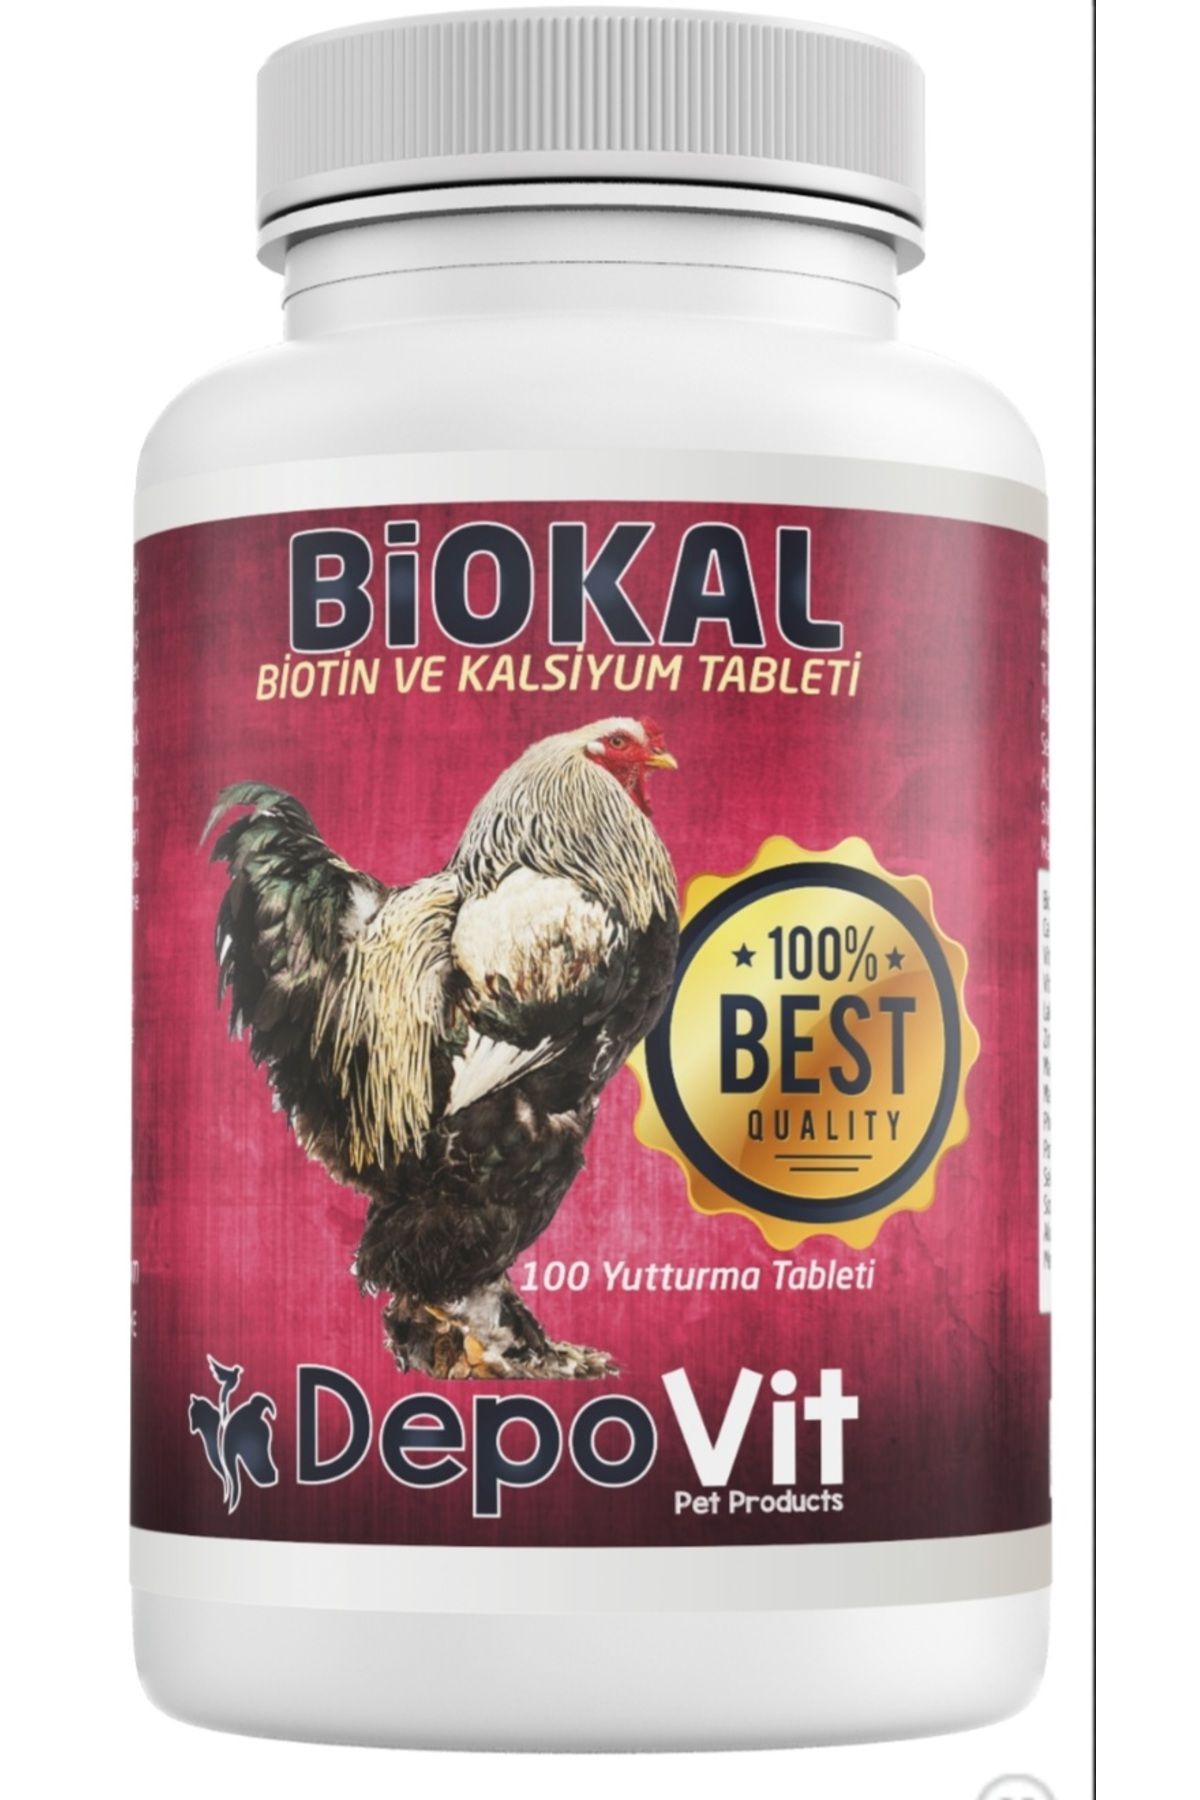 DEPOVİT Biocal Biotin Tablet